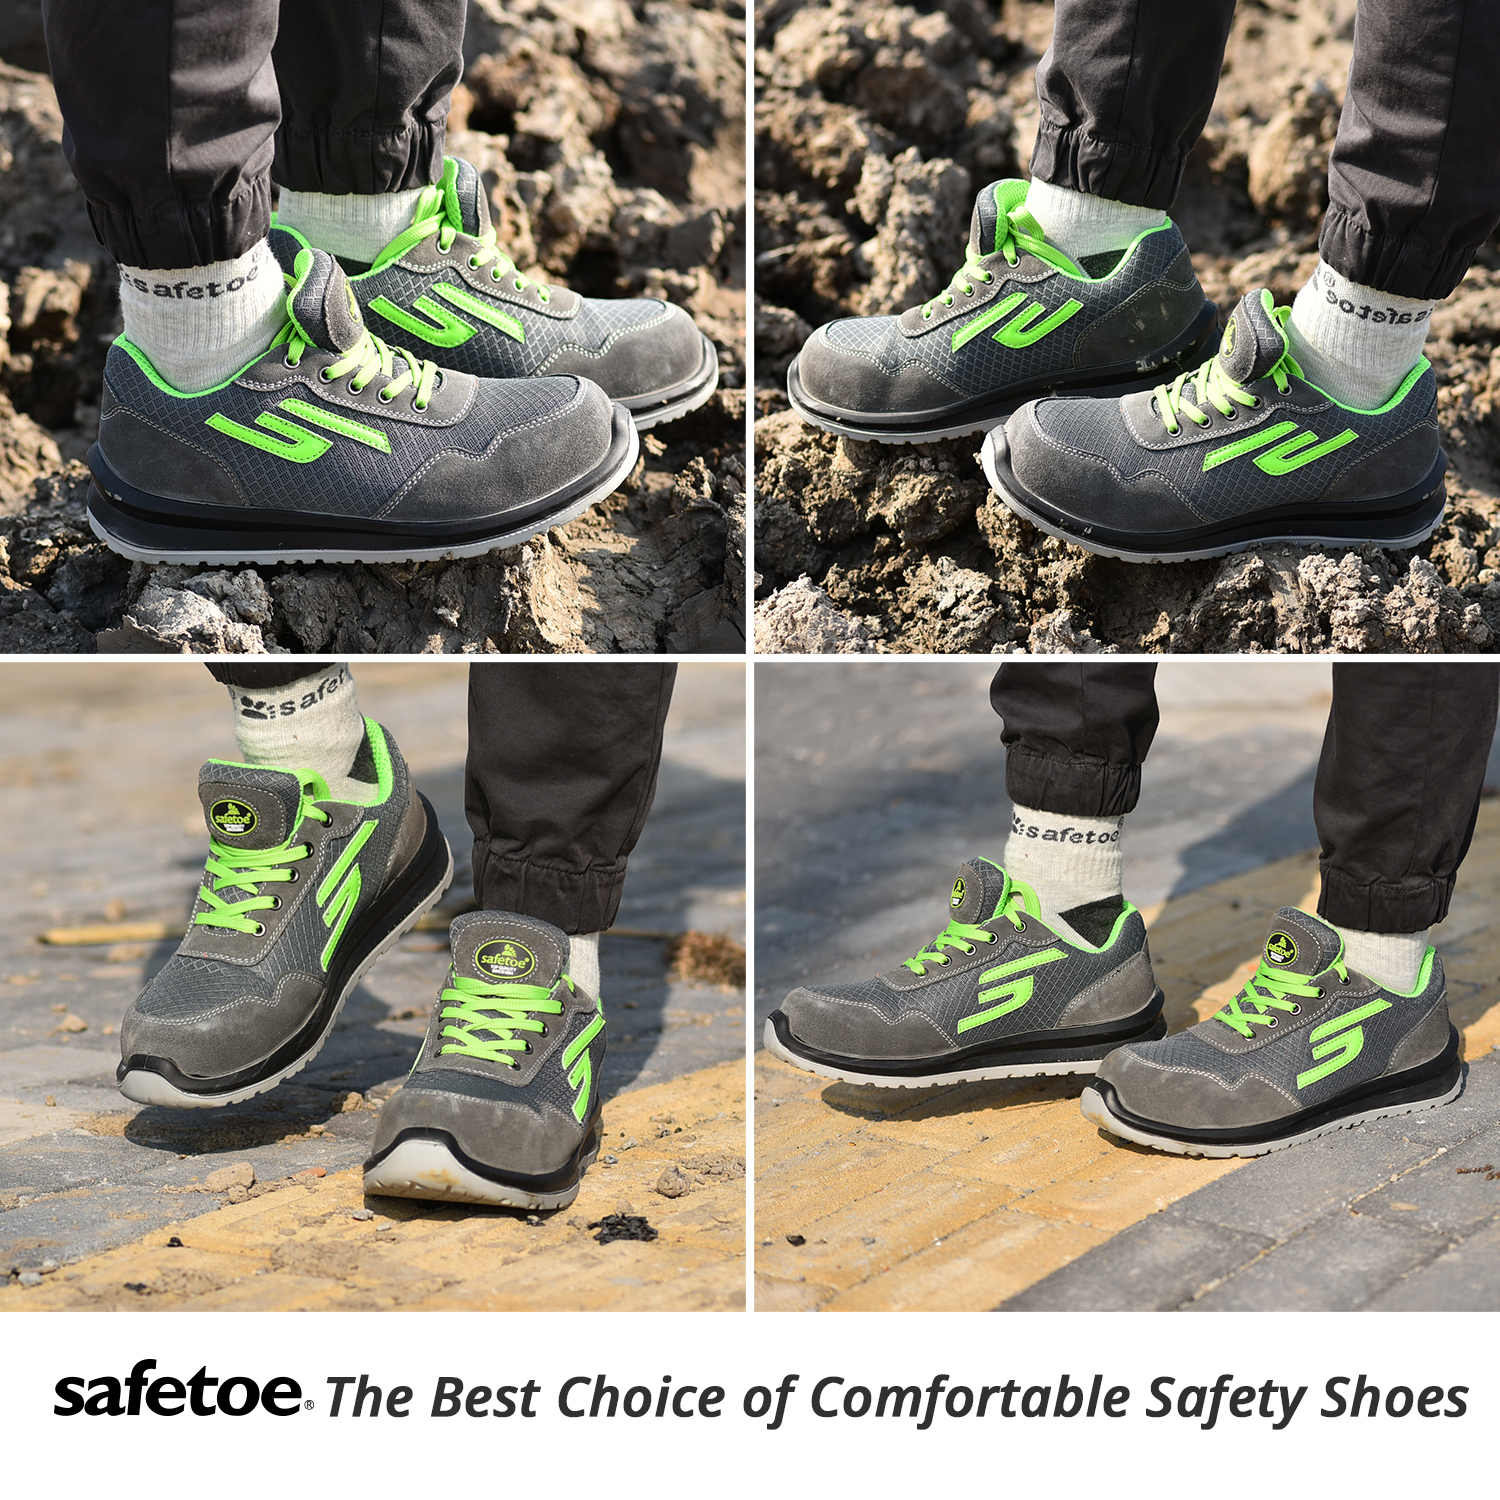 Защитная обувь без содержания металла L-7328 Зеленый